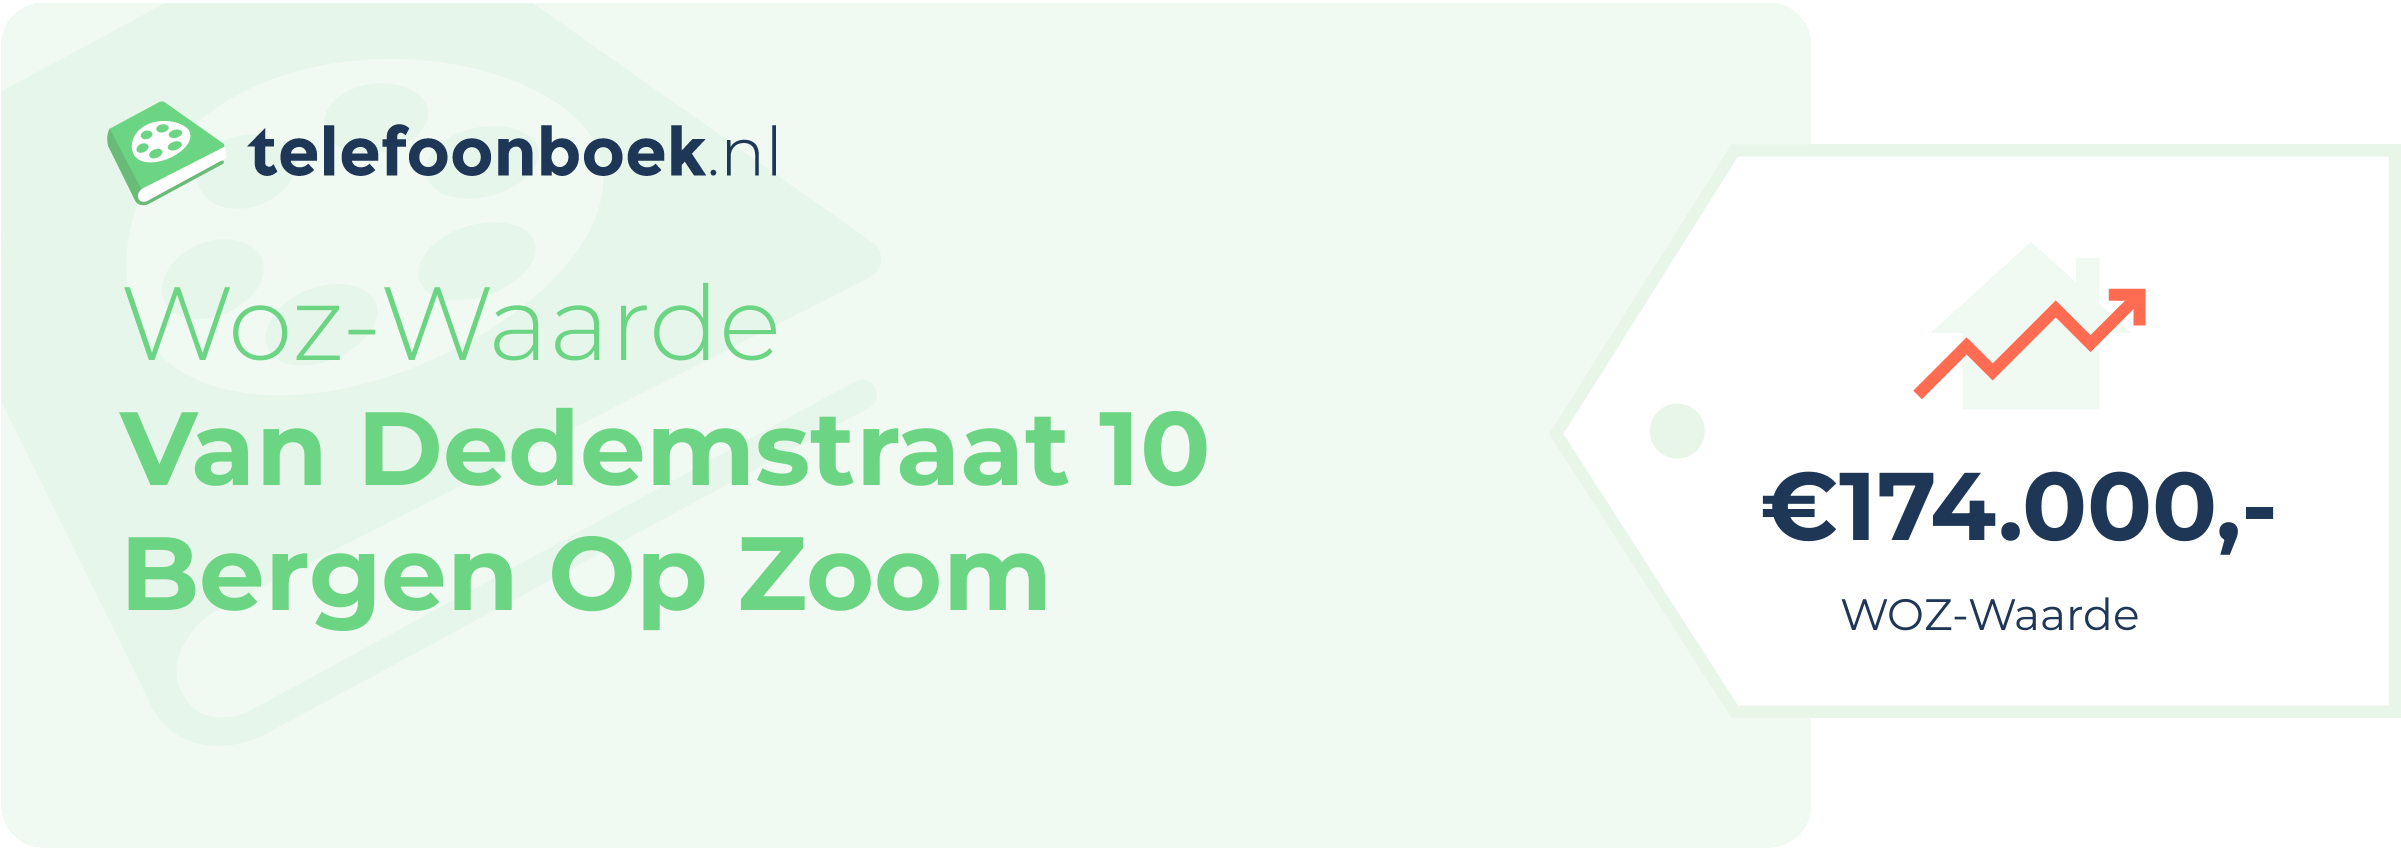 WOZ-waarde Van Dedemstraat 10 Bergen Op Zoom